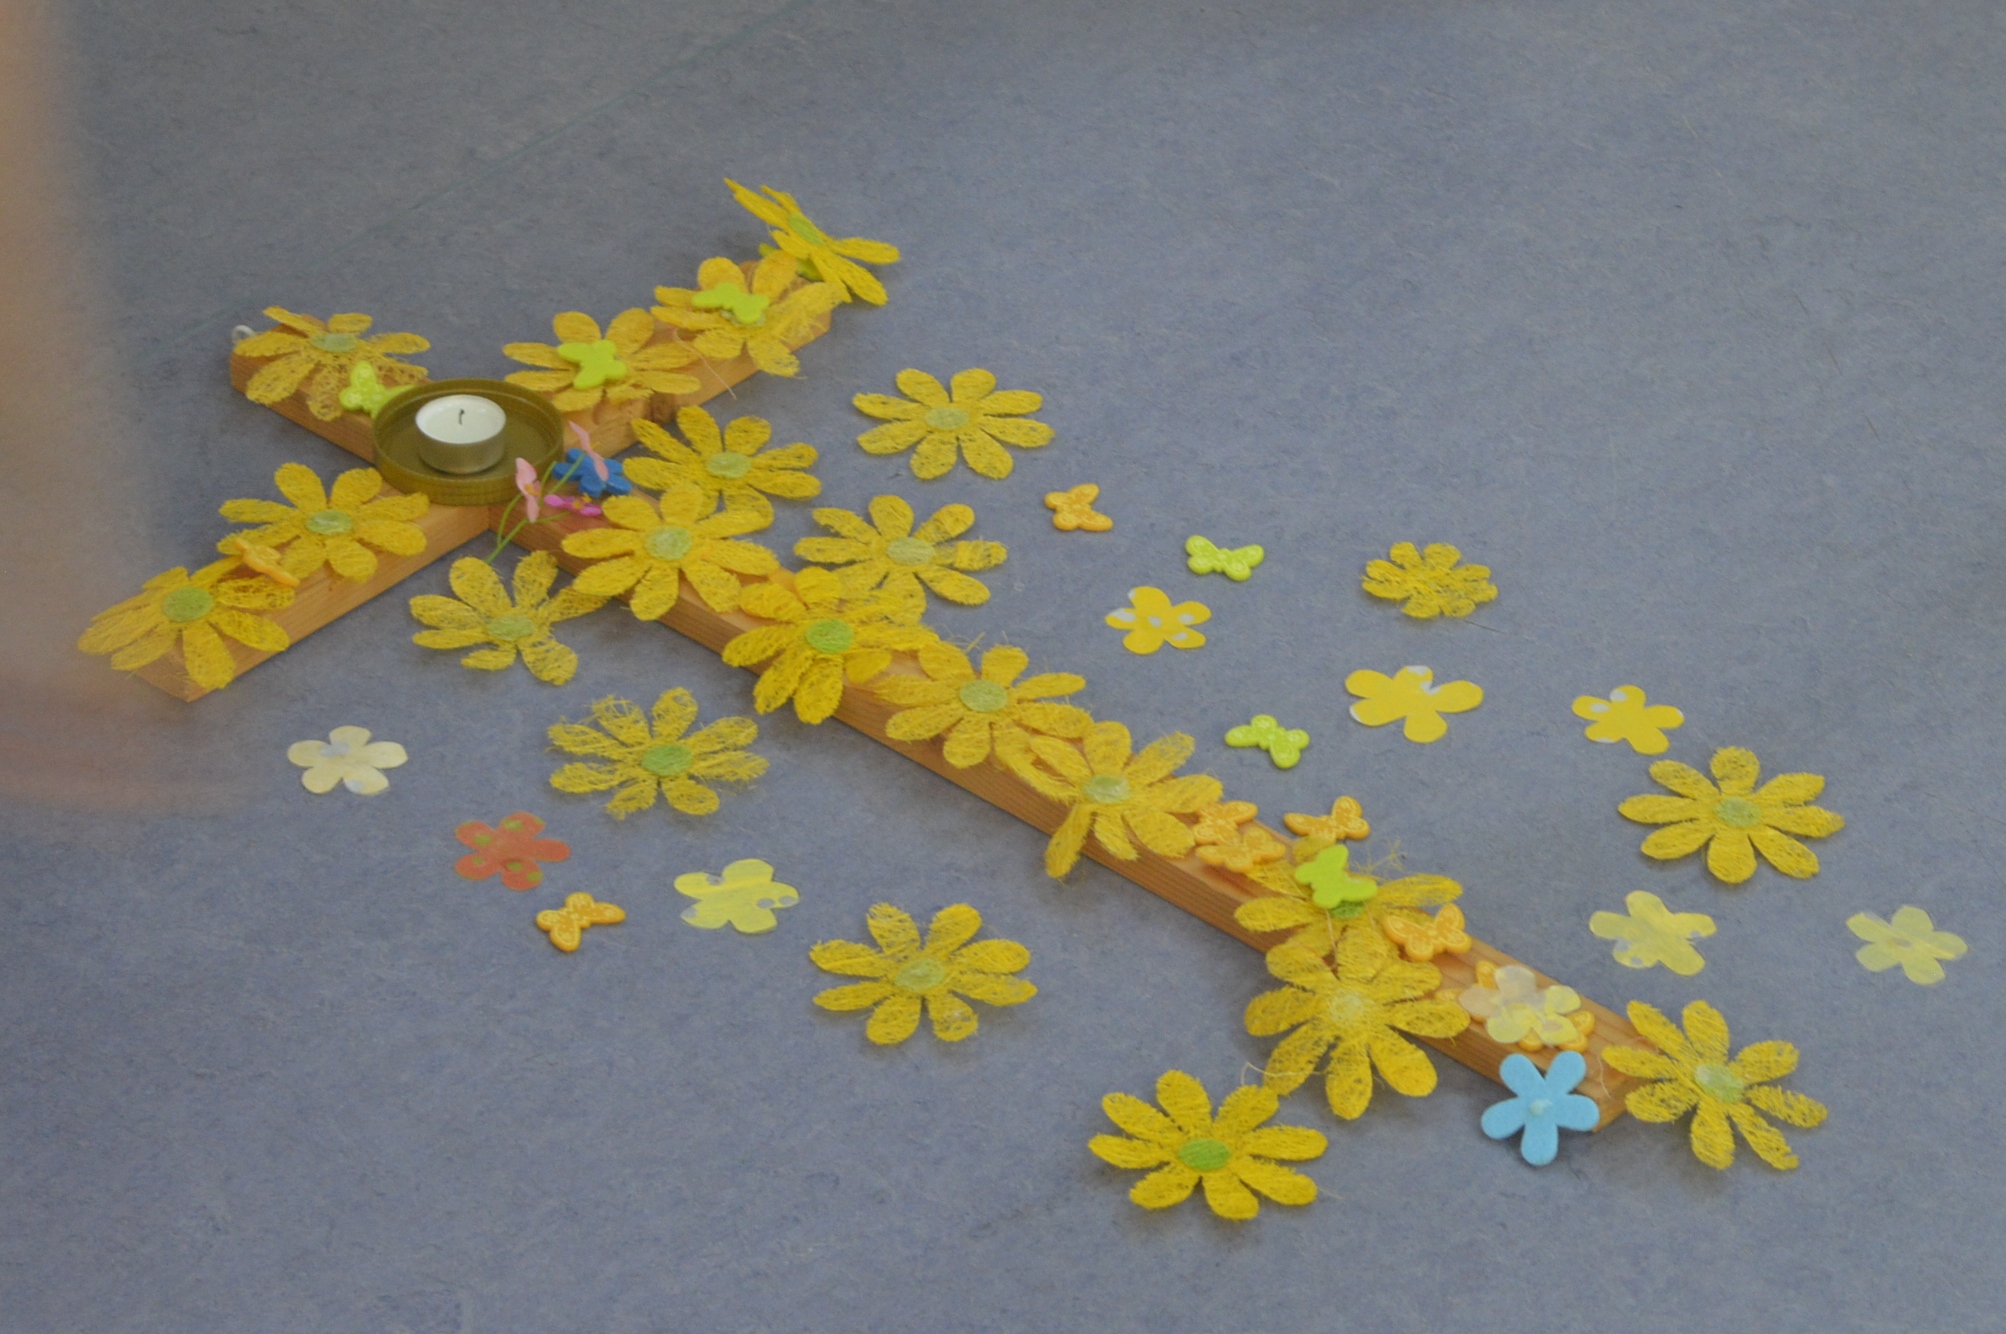 Holzkreuz mit vielen gelben Blumen von SchülerInnen bedeckt